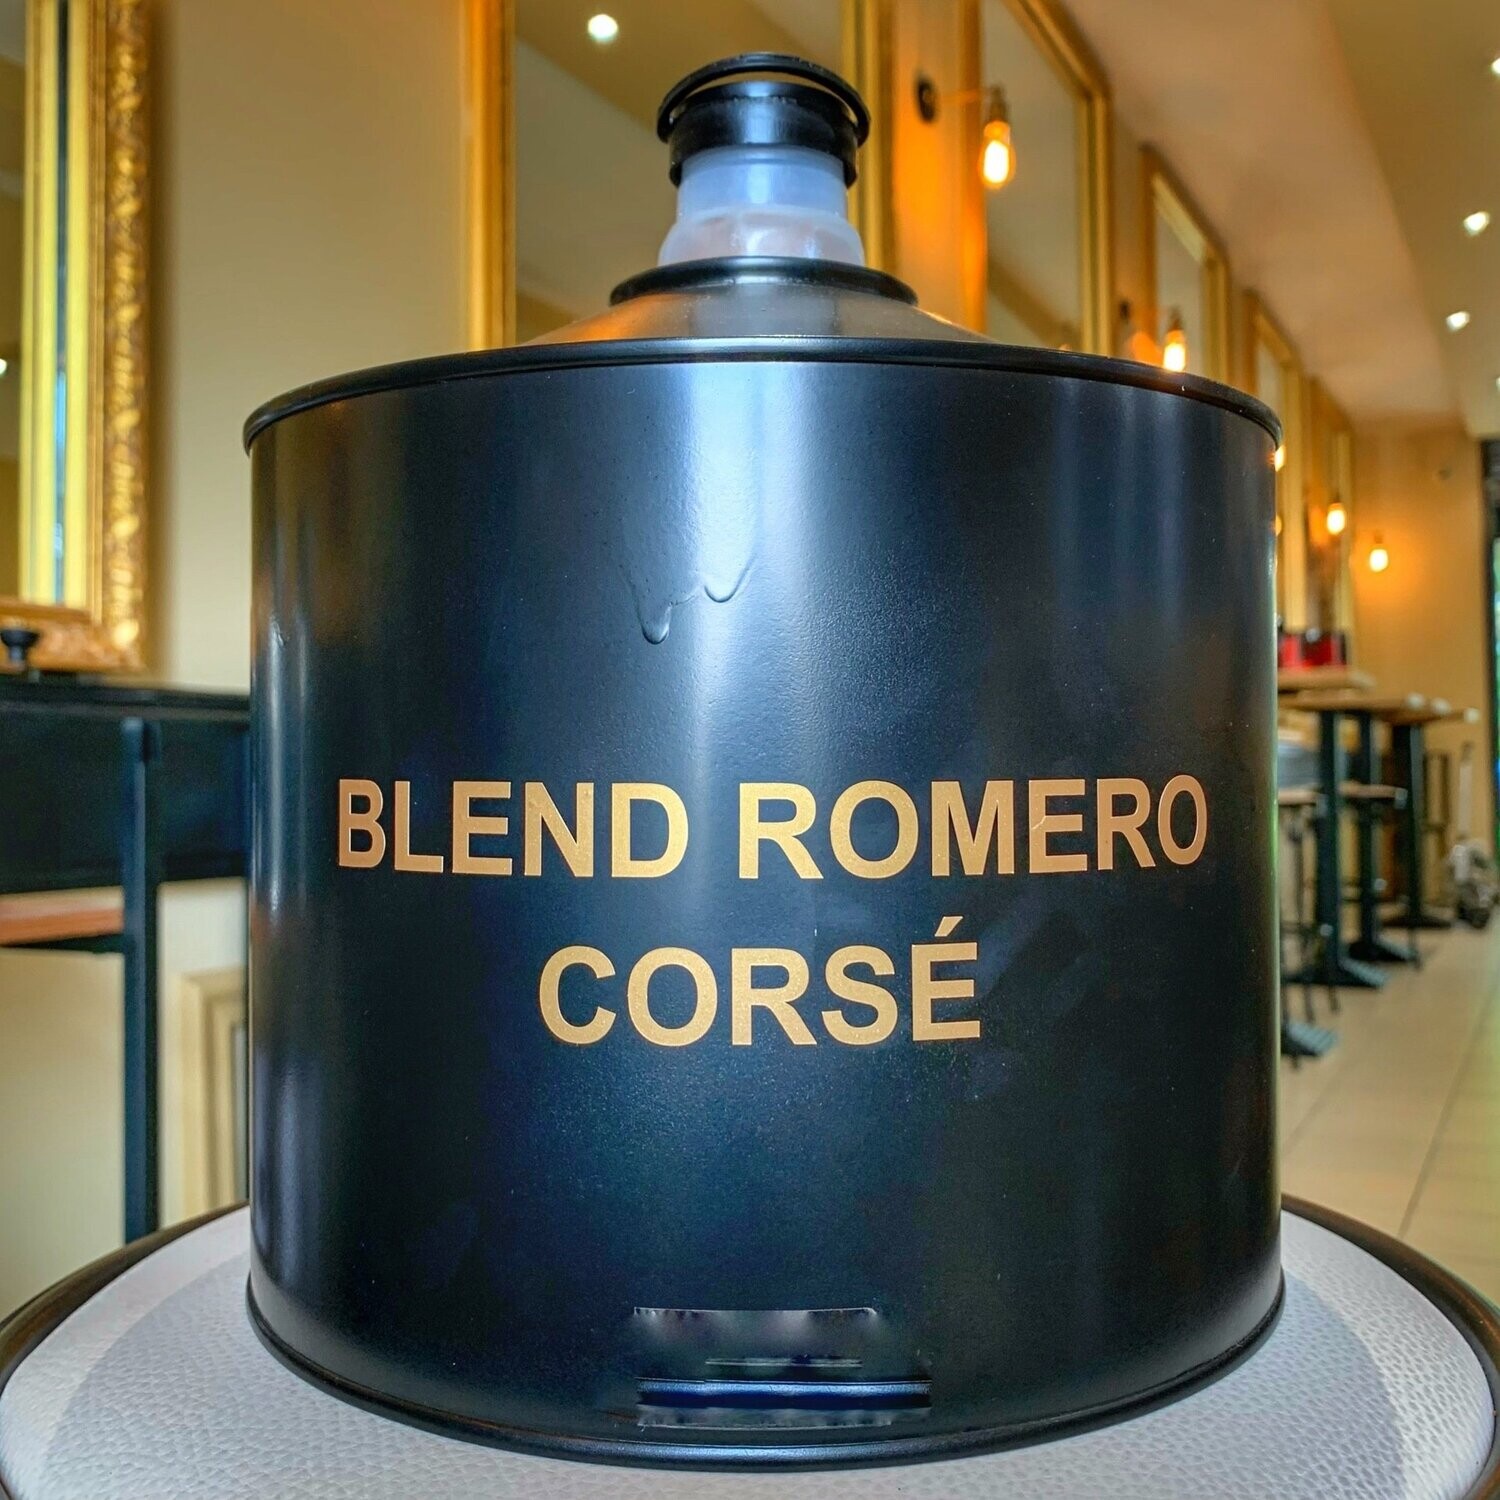 Blend Romero corsé Prix Kg: